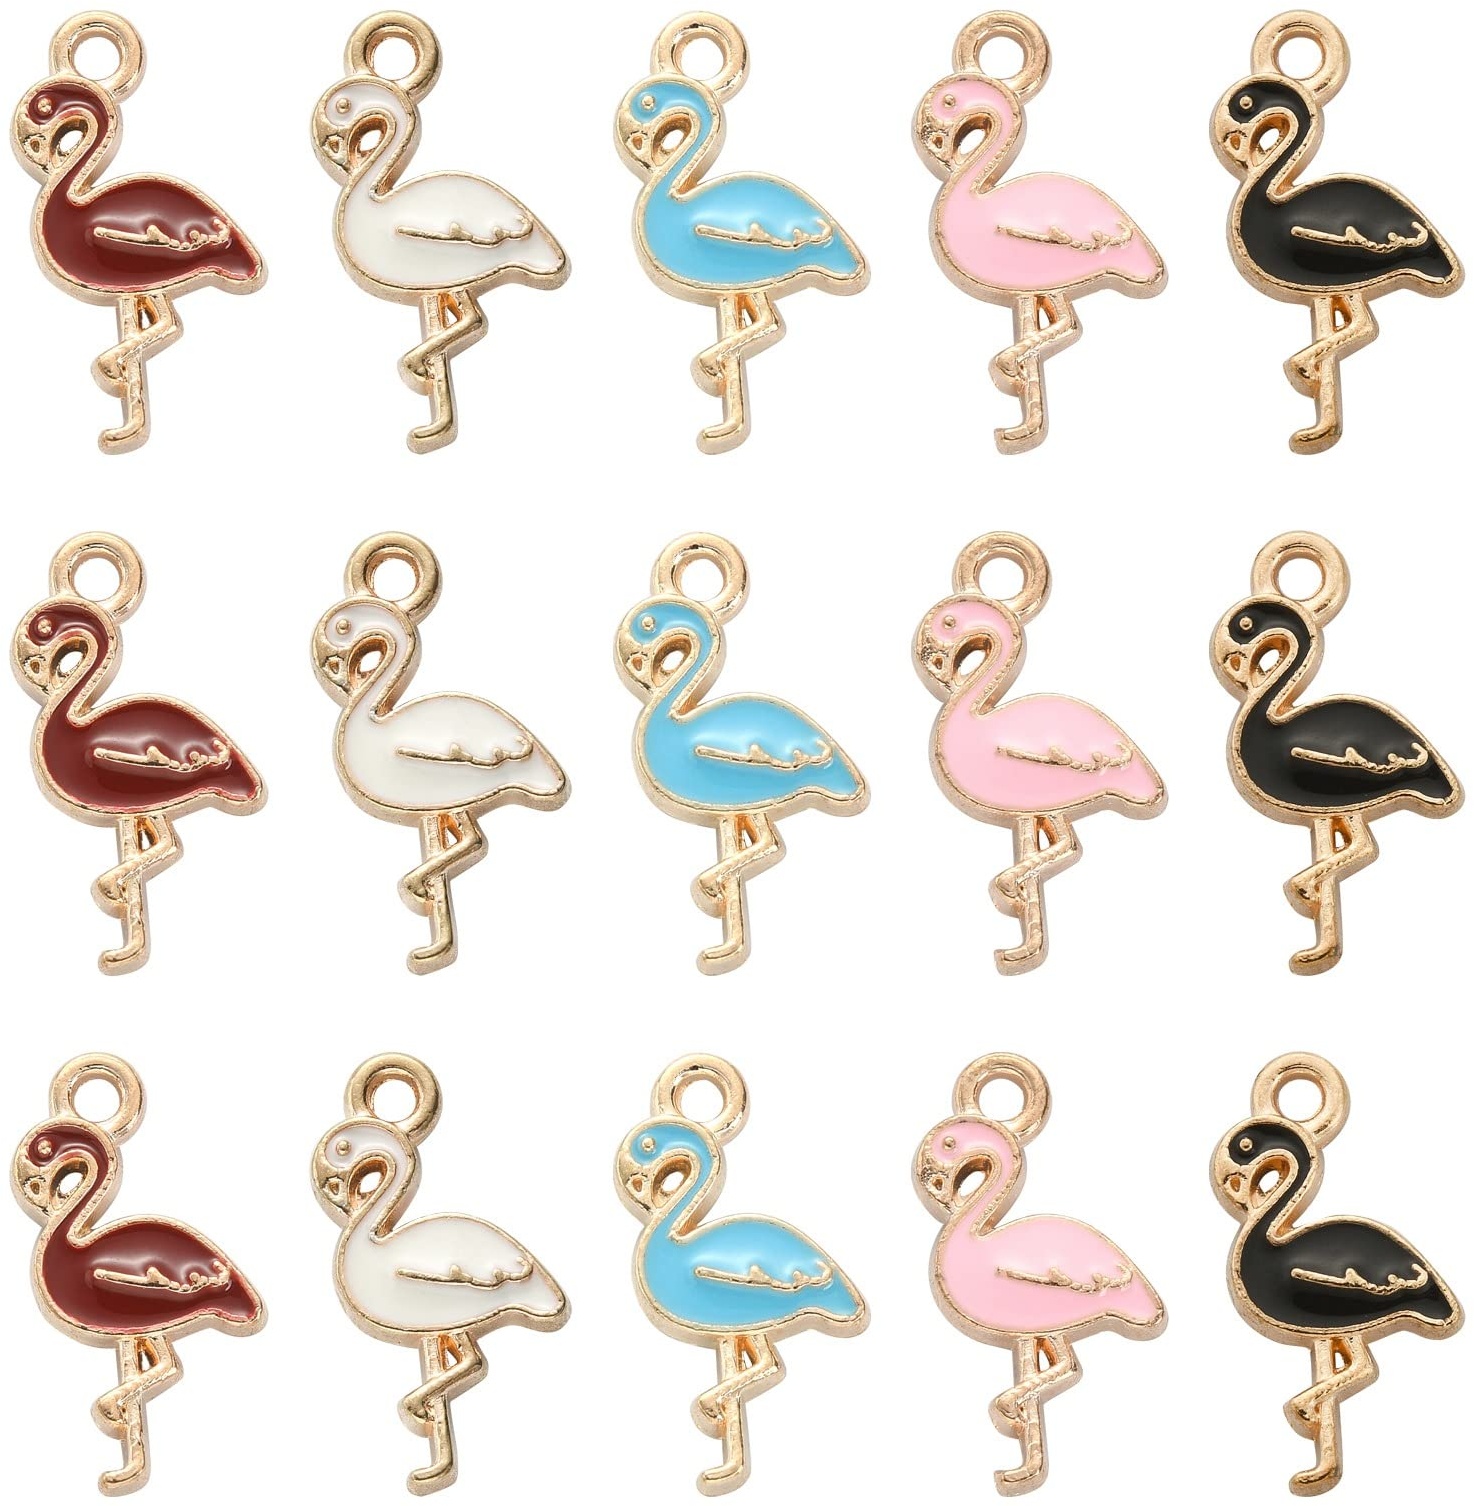 Ipotkitt 50 Stück 5 Farben Emaille Flamingo Charms Tier Vogel Charms Hawaii Stil Schmuck Zubehör für Halskette Armband Schmuckherstellung DIY Handwerk